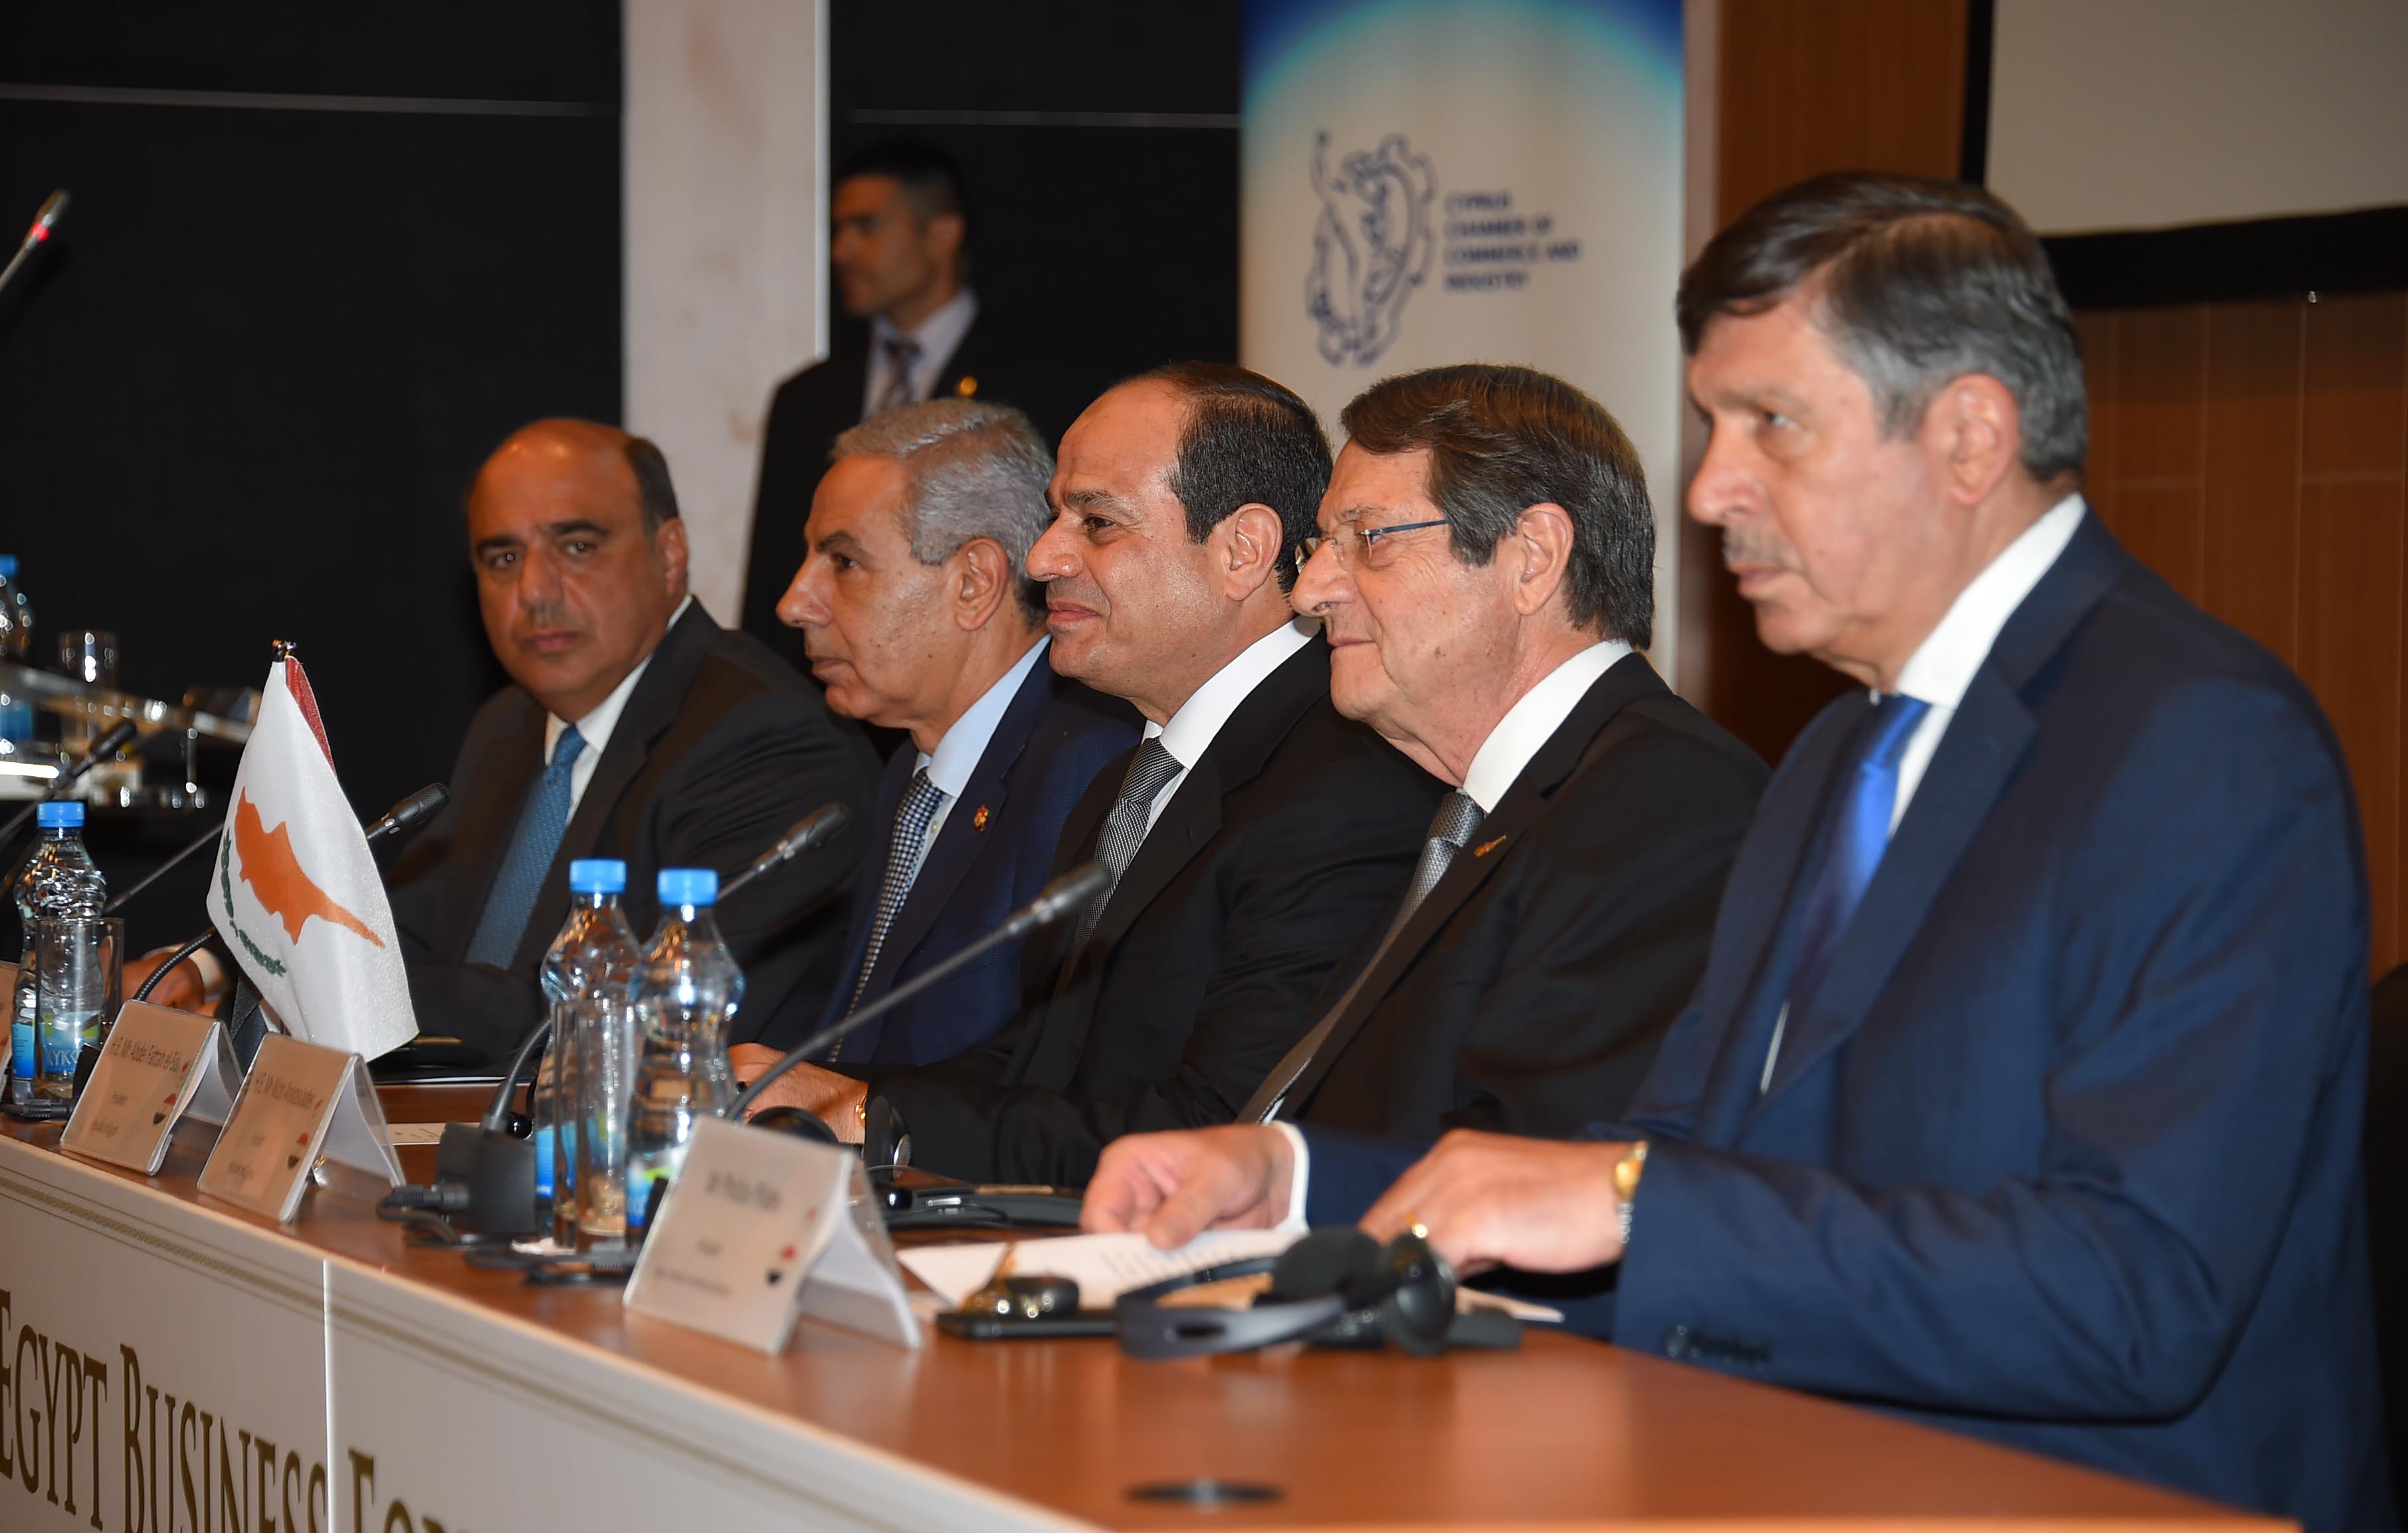 صور مشاركة السيد الرئيس في افتتاح منتدى الأعمال المصري القبرصي (1)